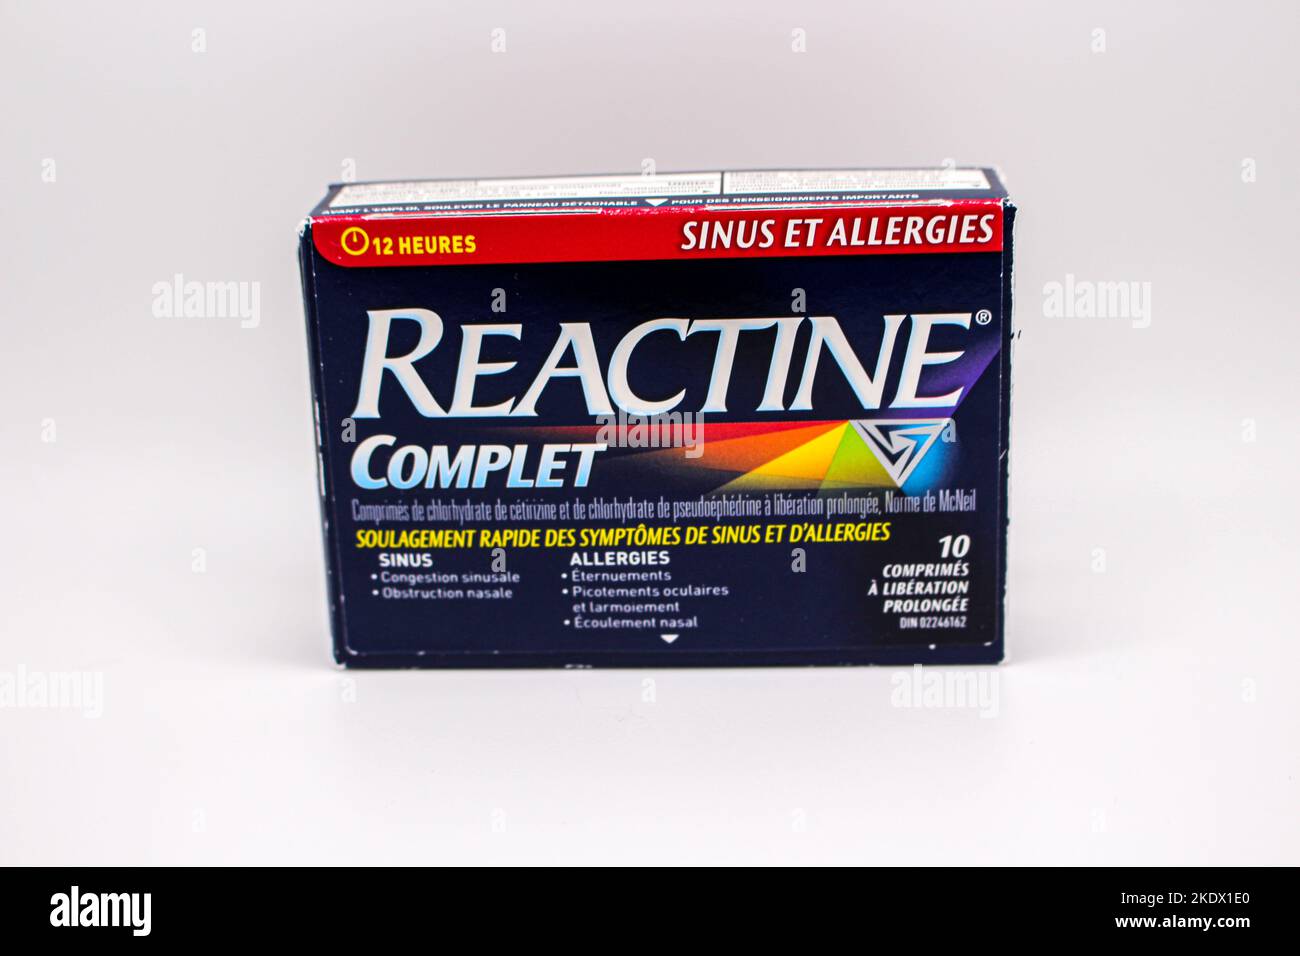 Reactine completa allergia medicina in francese parole scritte sulla scatola in Surrey, BC Foto Stock